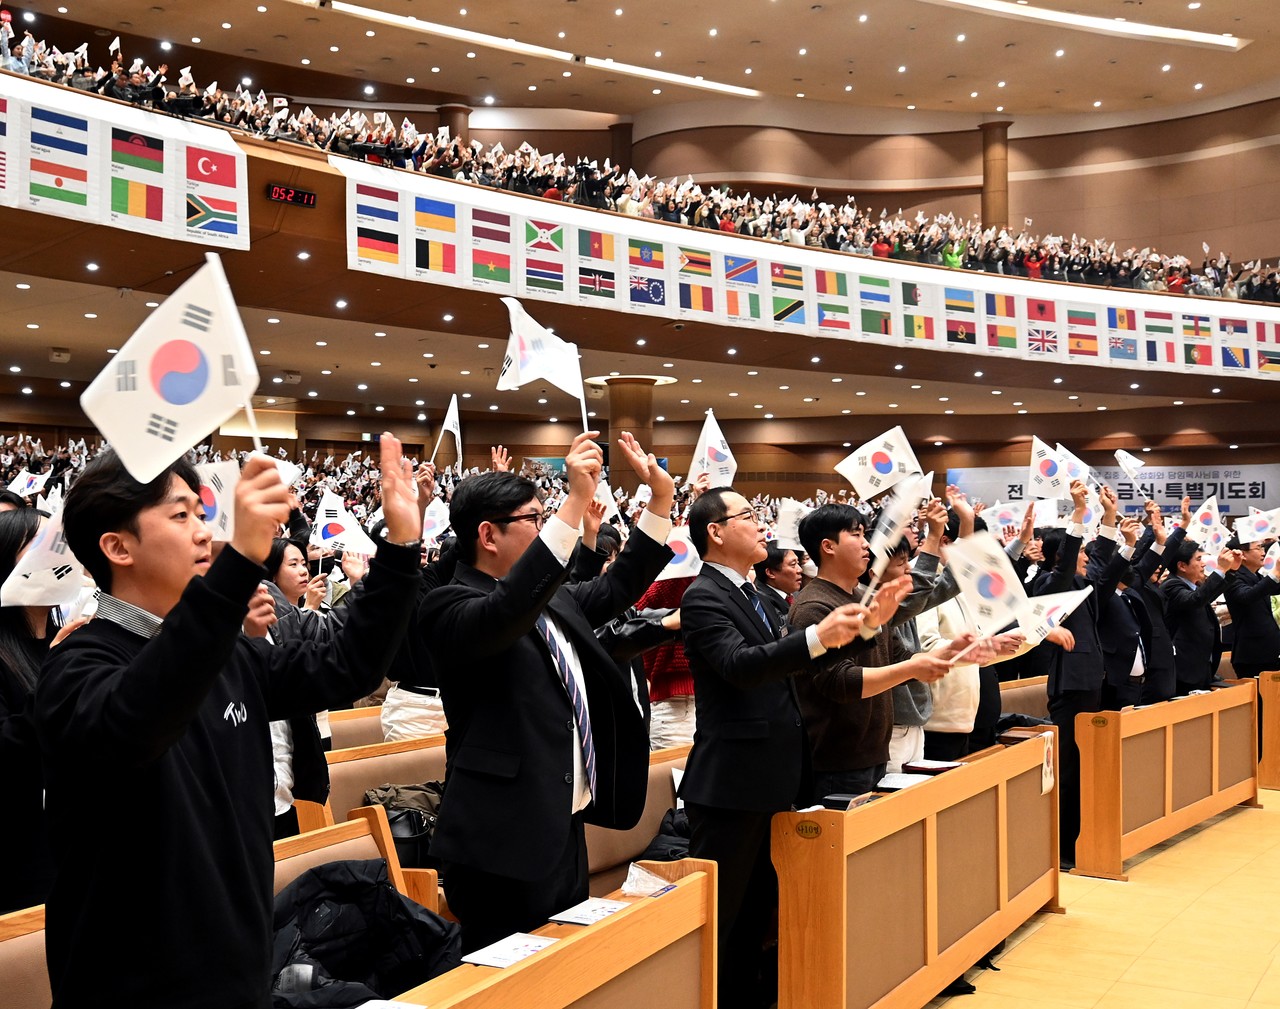 지난 2월 25일 연세중앙교회에서 진행된 '3.1운동 제105주년 한국교회 기념예배'에서 참가자들이 만세삼창을 외치며 테극기를 흔들고 있다.